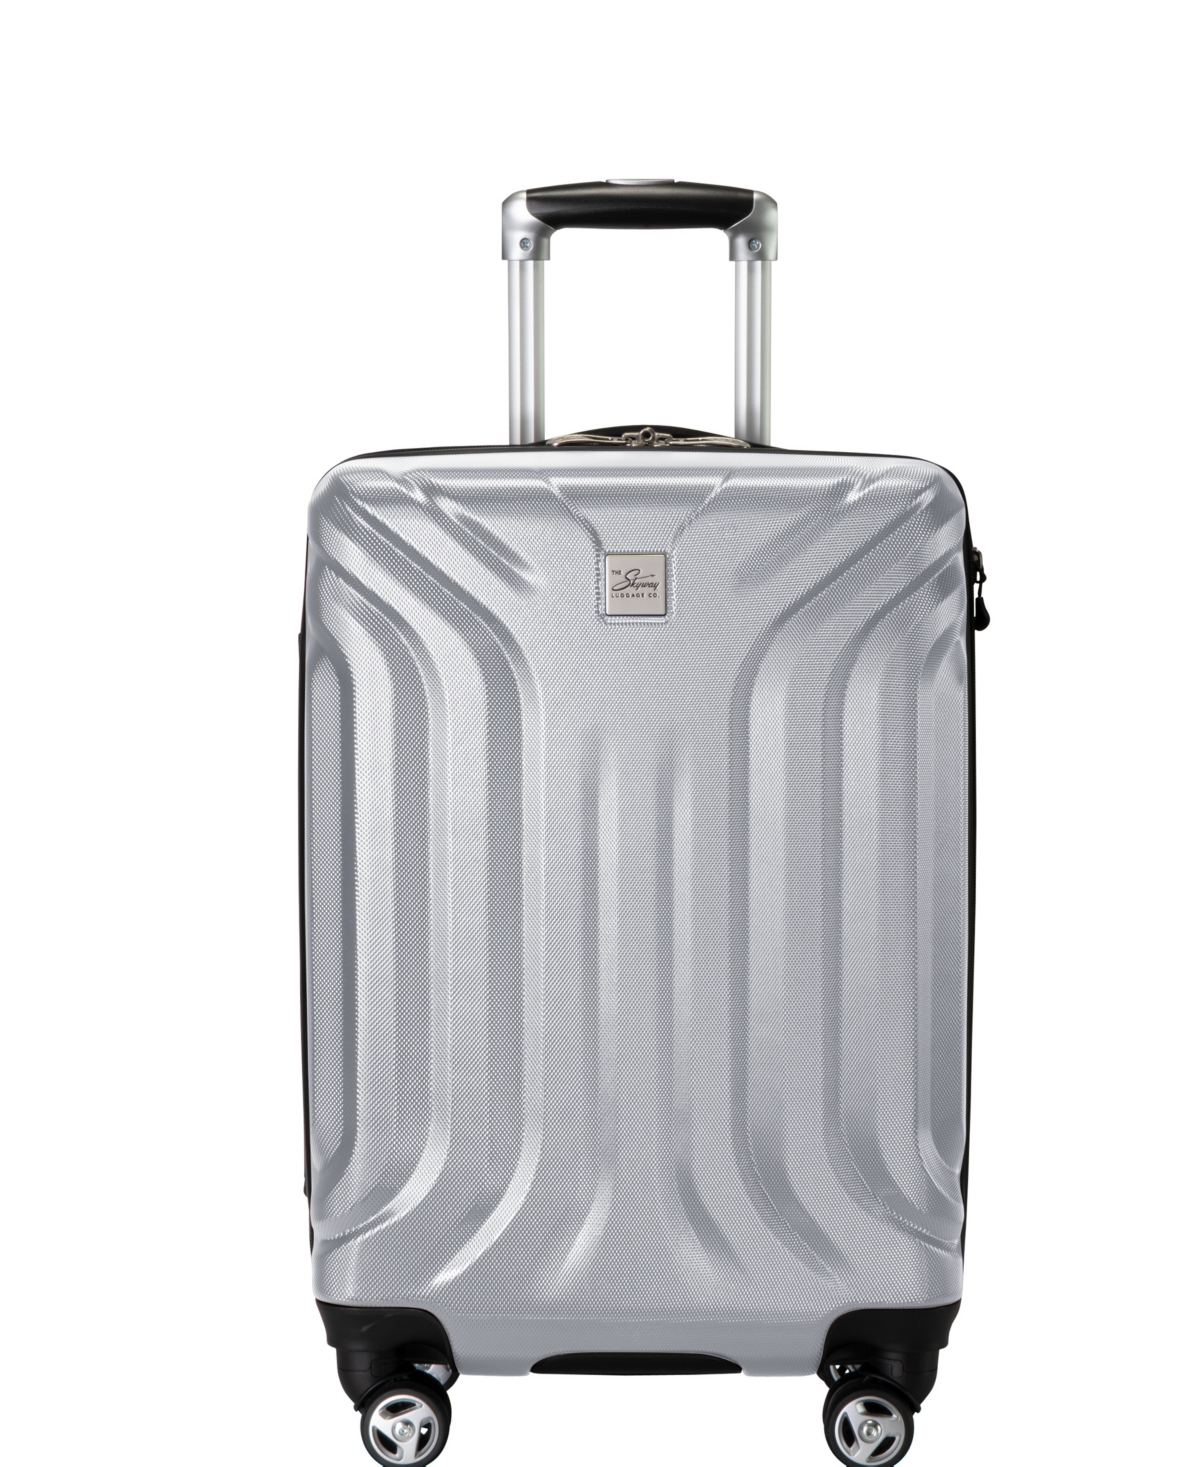 Nimbus 4.0 20" Hardside Carry-On Suitcase - Shiny Silver